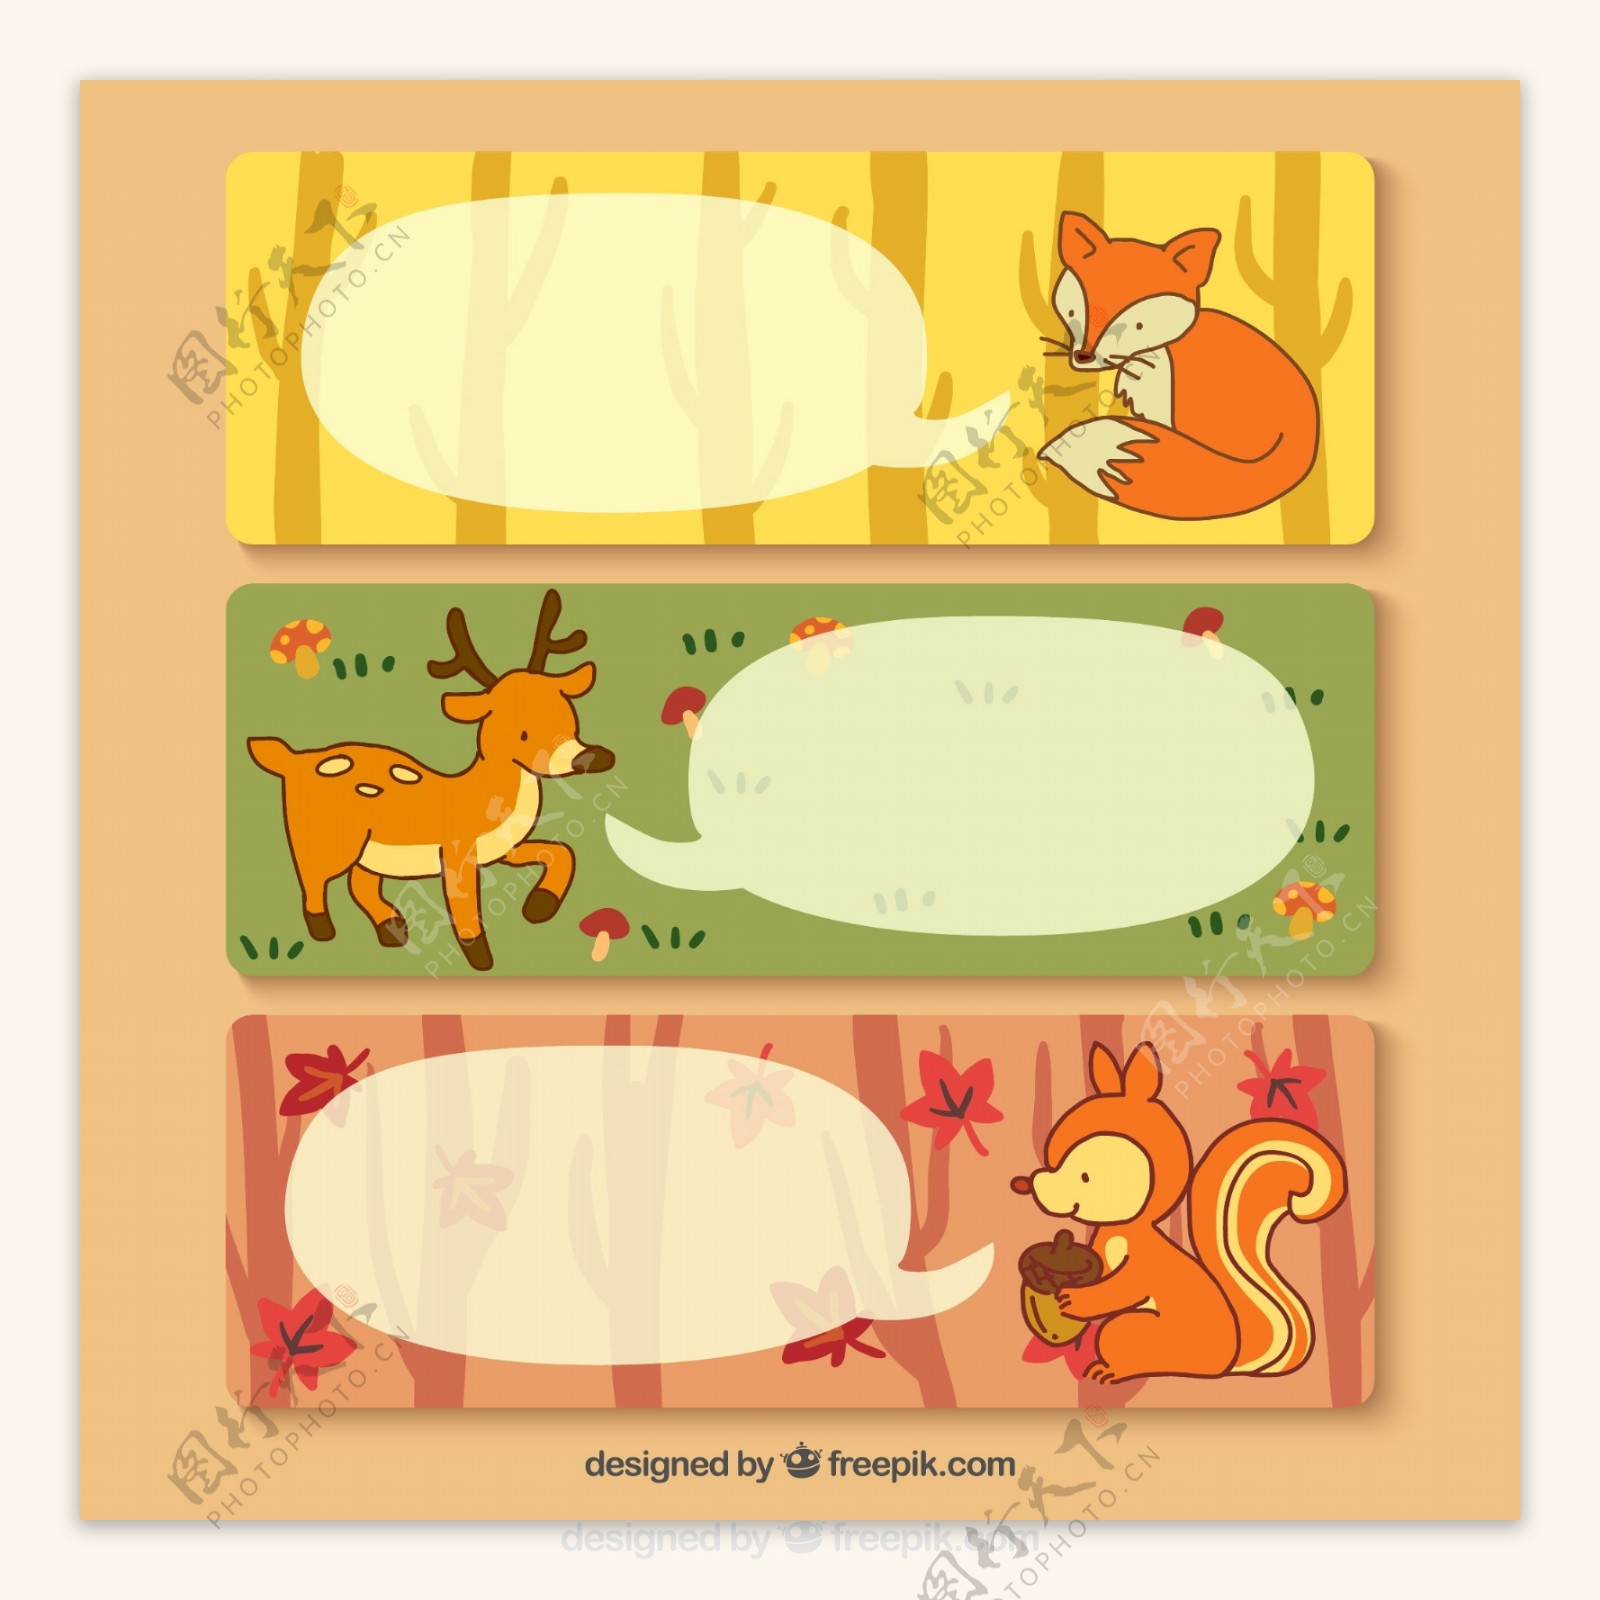 3款卡通森林动物banner矢量素材